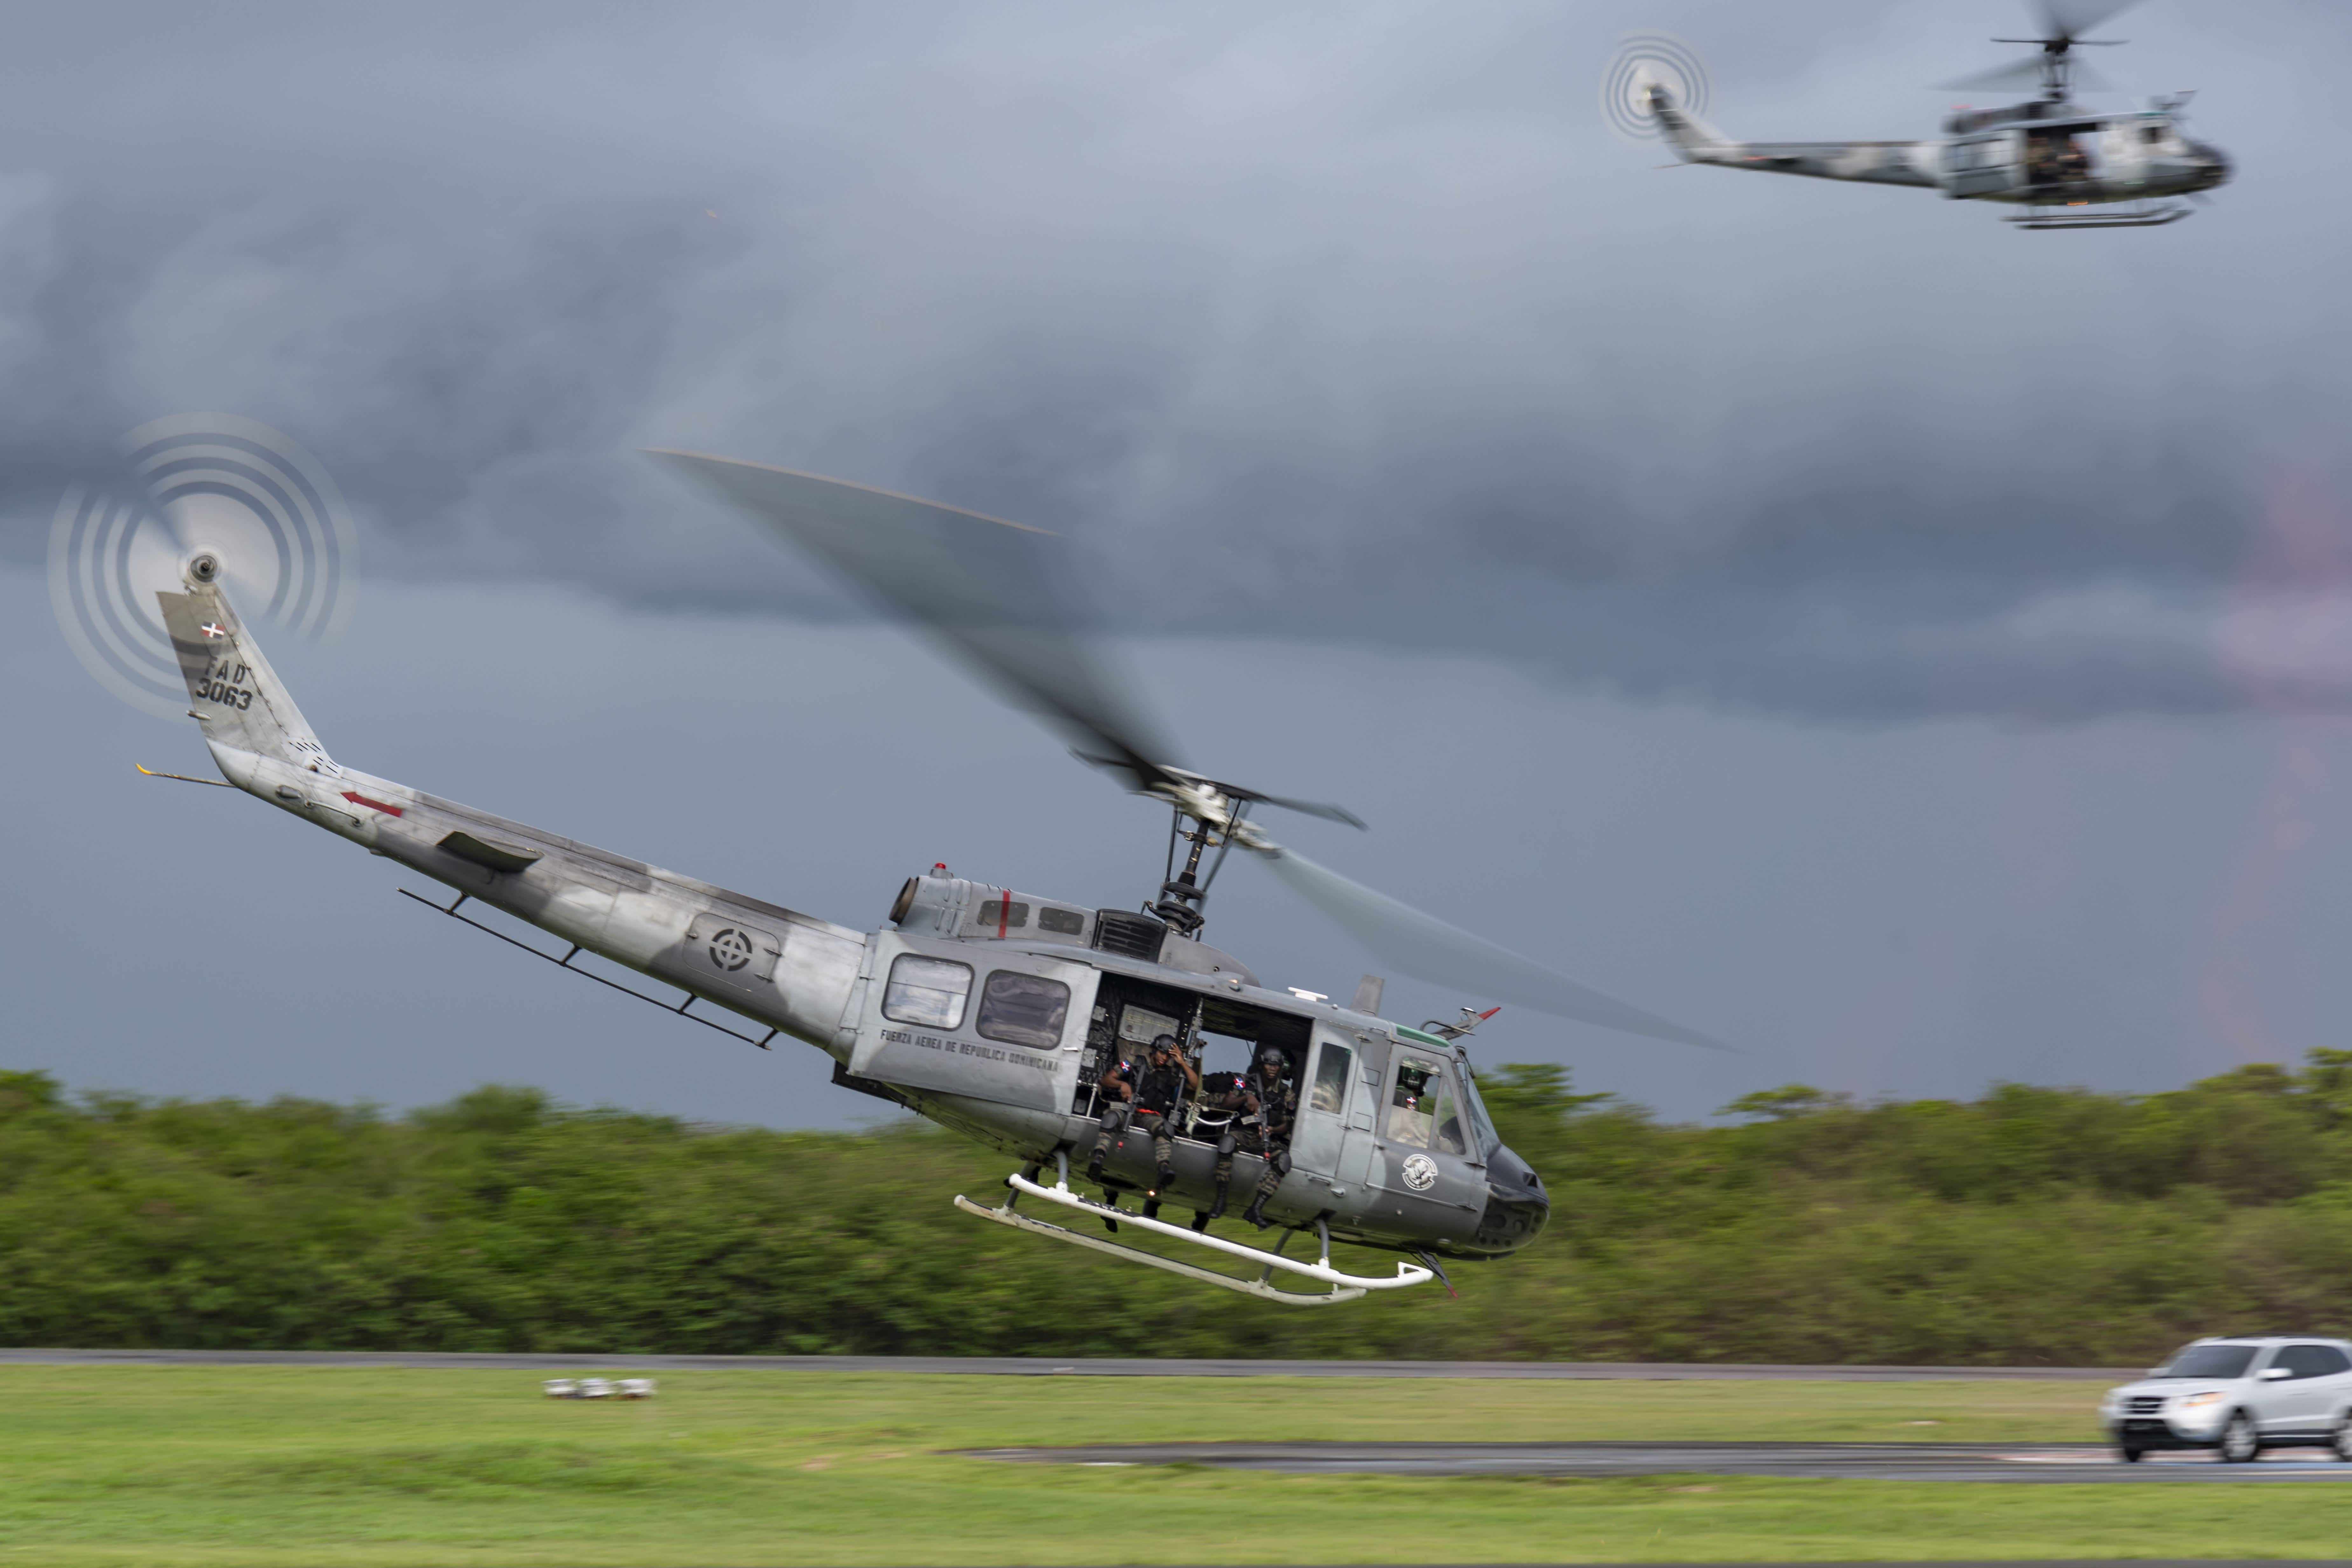 Una impactante exhibición de coordinación de asalto de tropas desembarcadas del helicóptero para interceptar una simulada situación de secuestro con rehenes, fue llevada a cabo con exactitud y pericia increíbles.